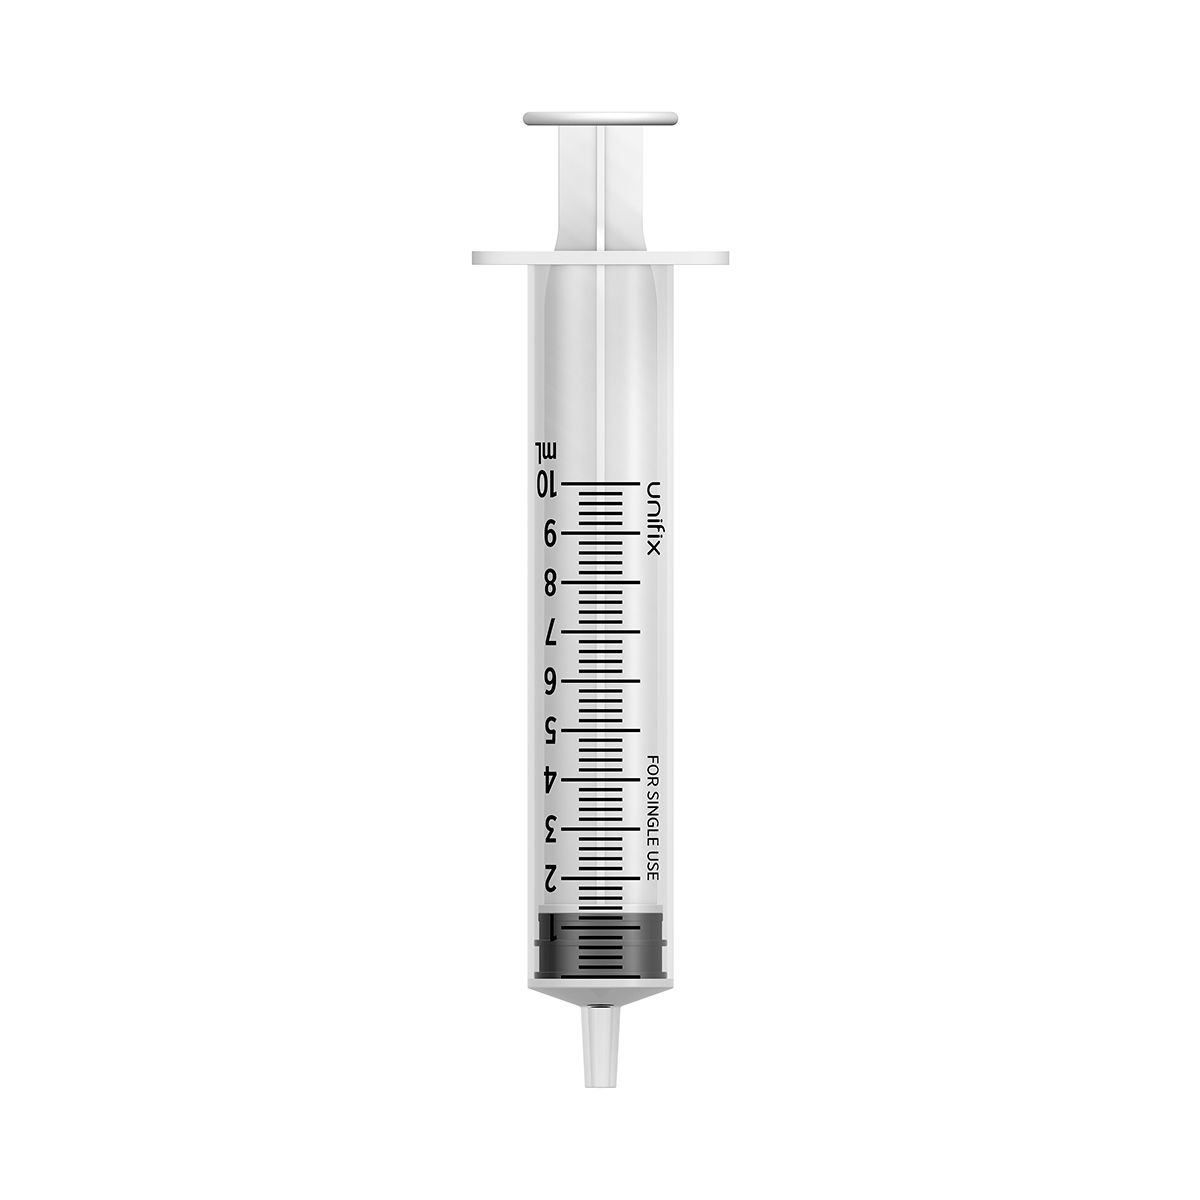 UX10 syringe